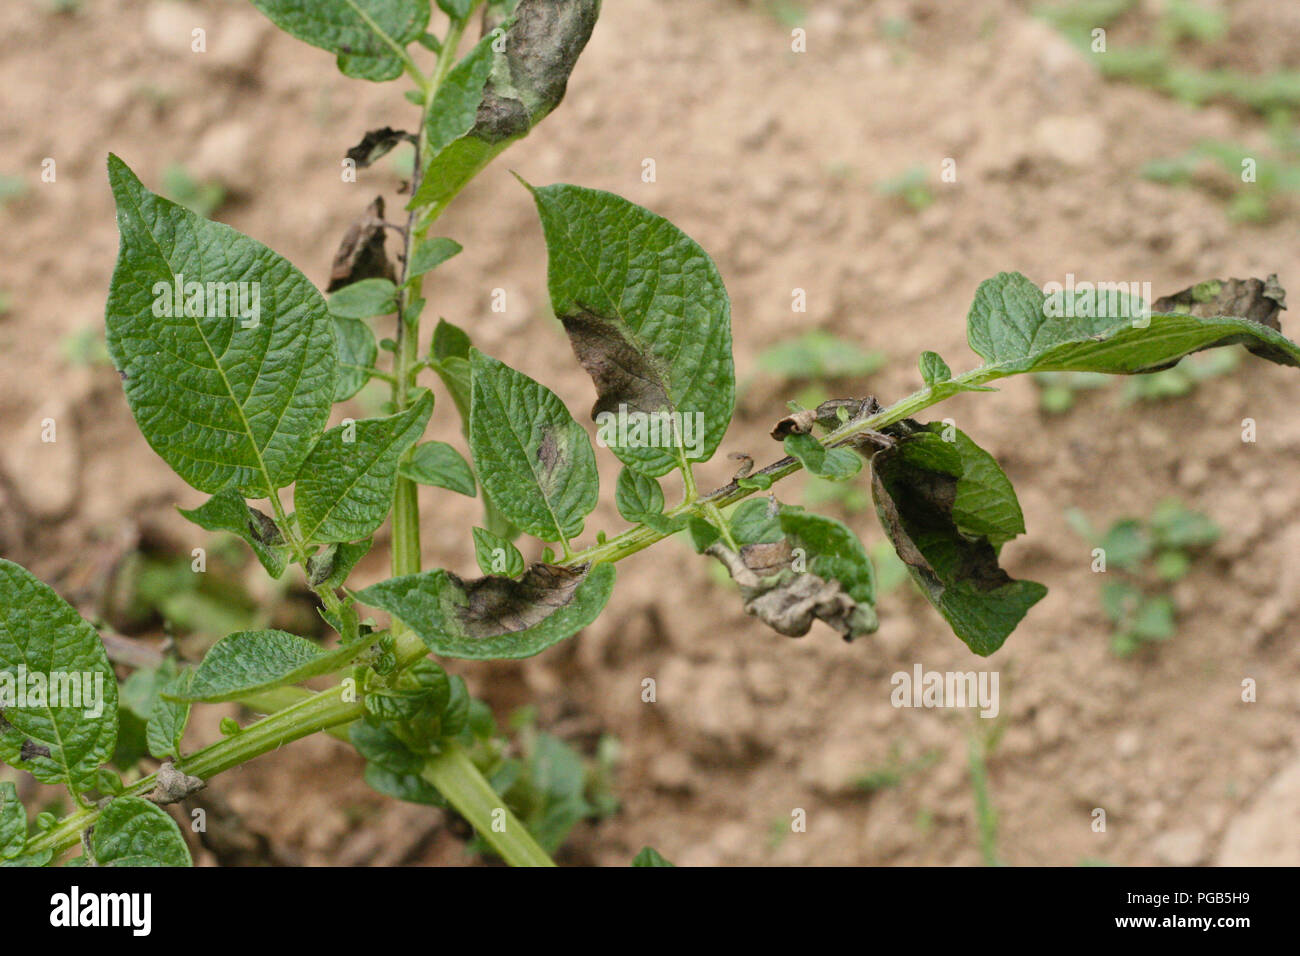 Potato late blight symptom on leaves Stock Photo